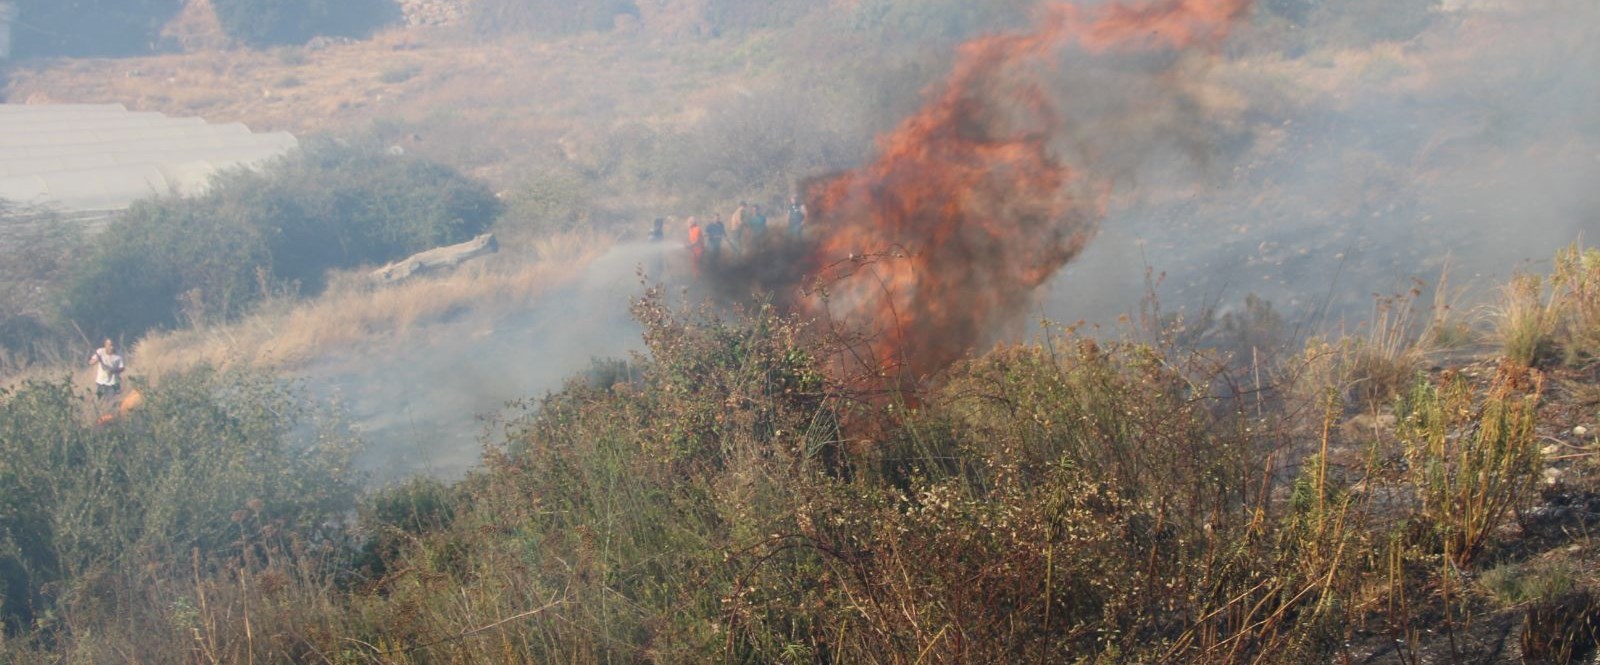 Antalya’da iki ayrı orman yangını